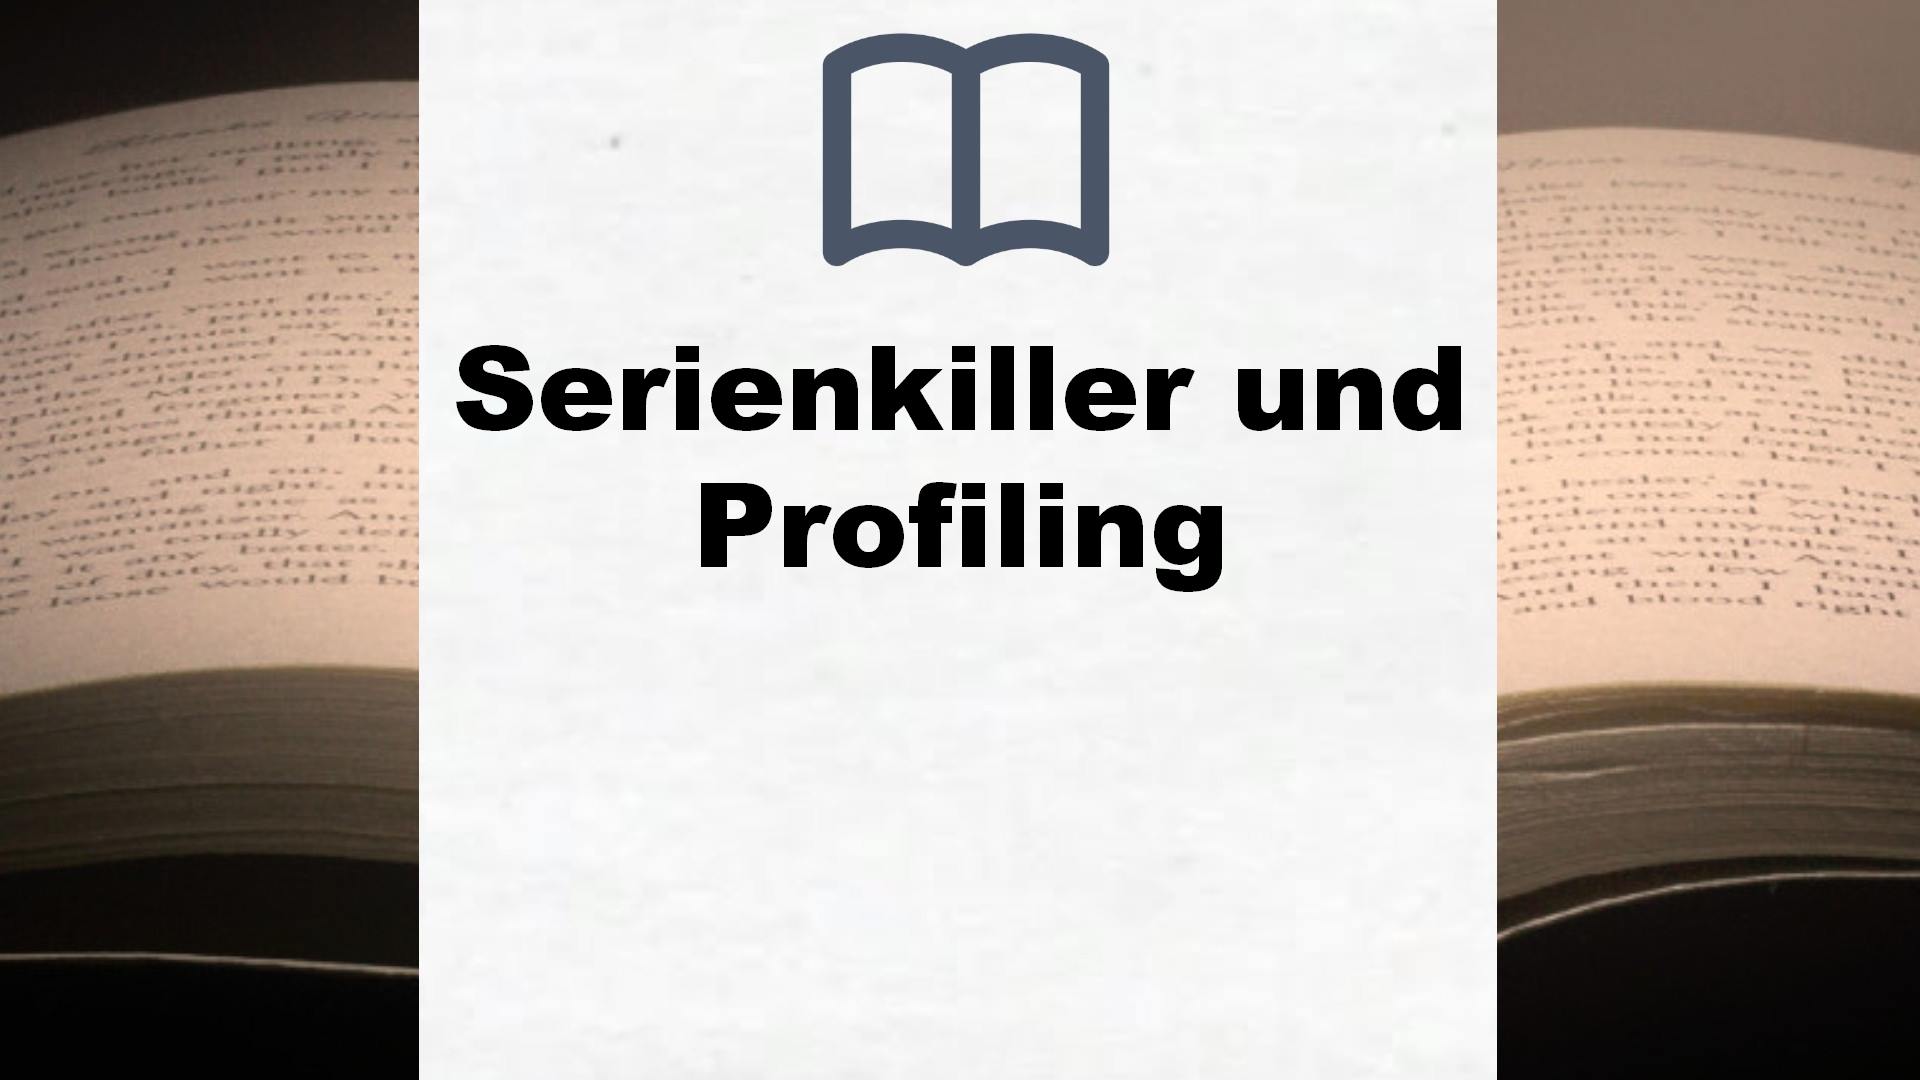 Bücher über Serienkiller und Profiling